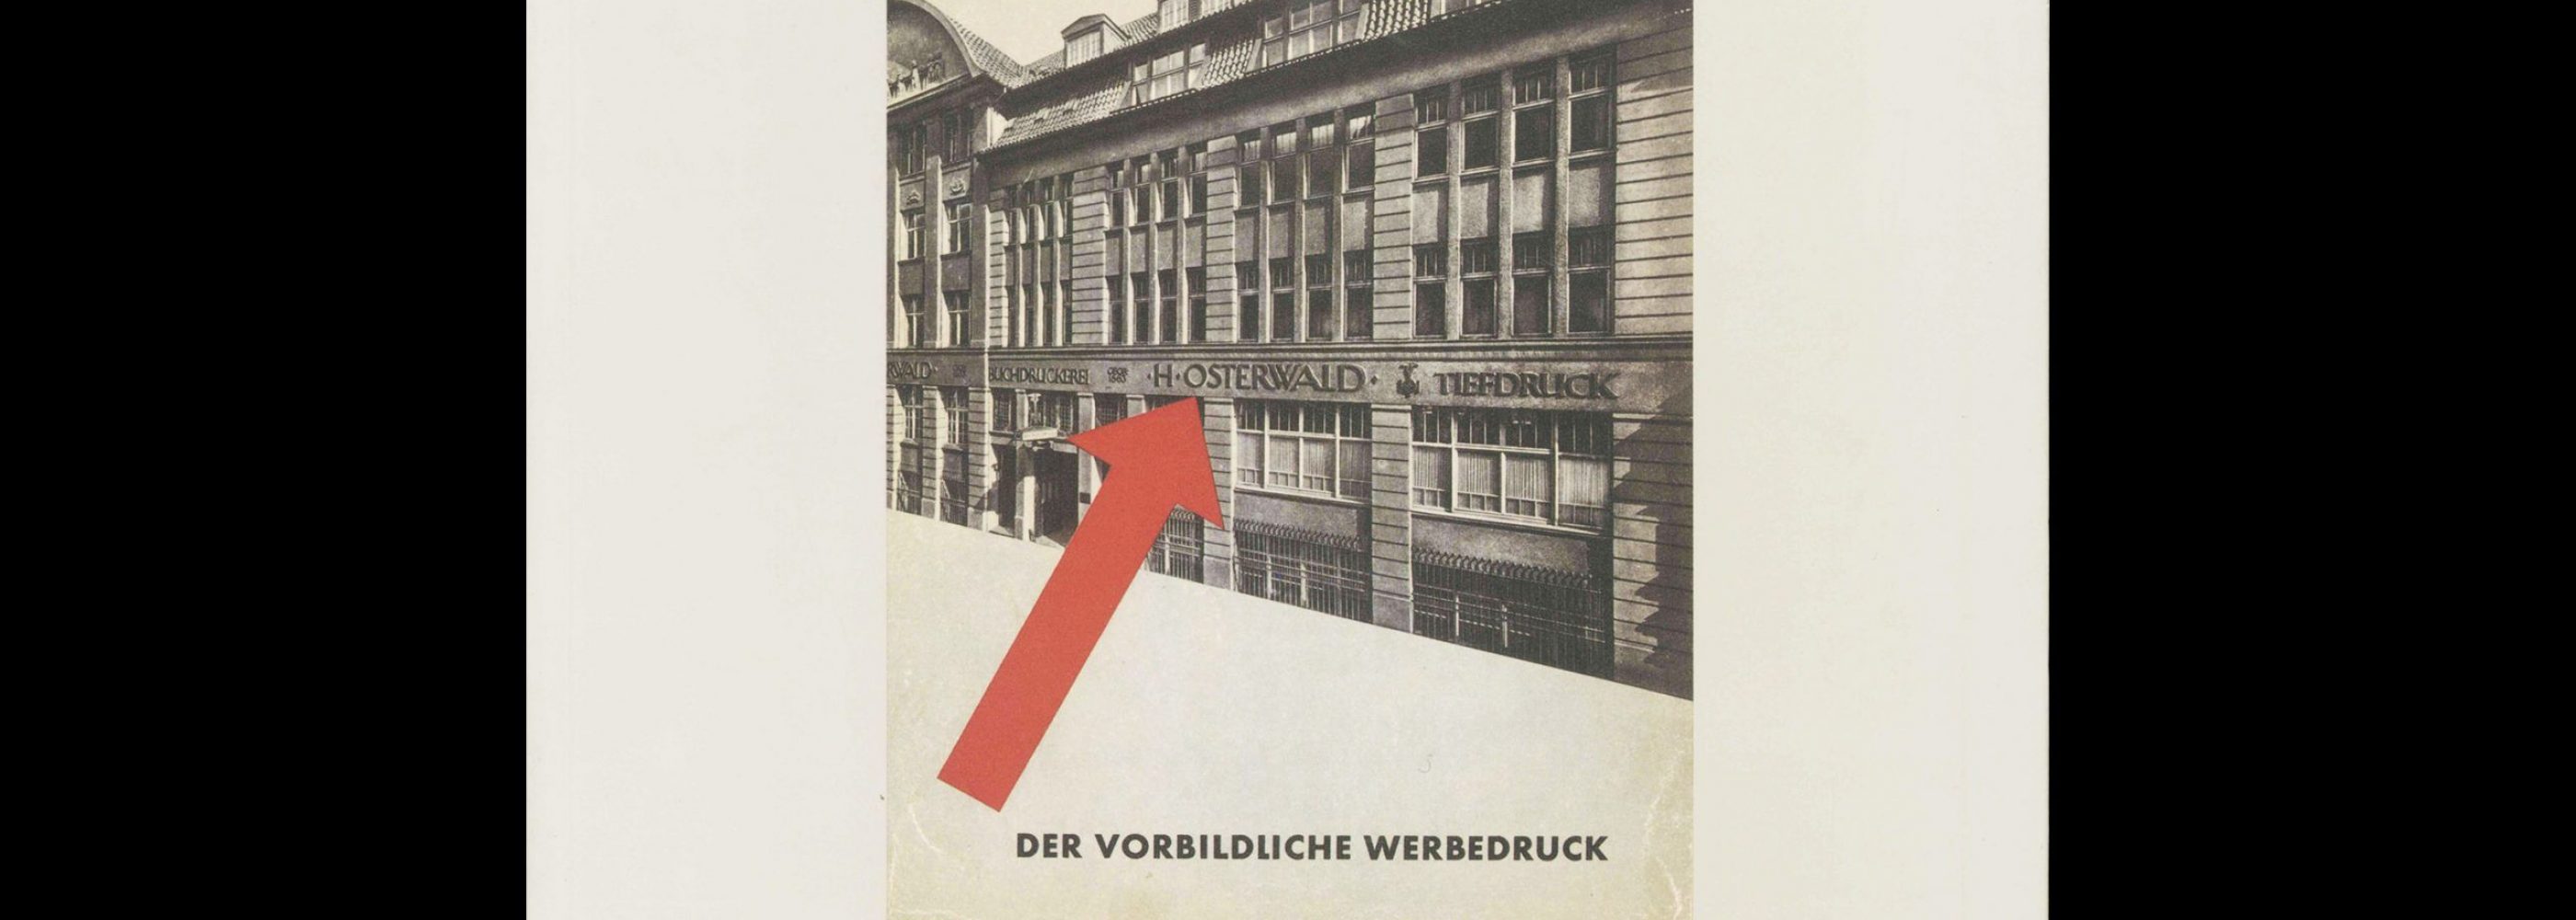 Friedrich Vordemberge-Gildewart Typographie und Werbegestaltung, 1990